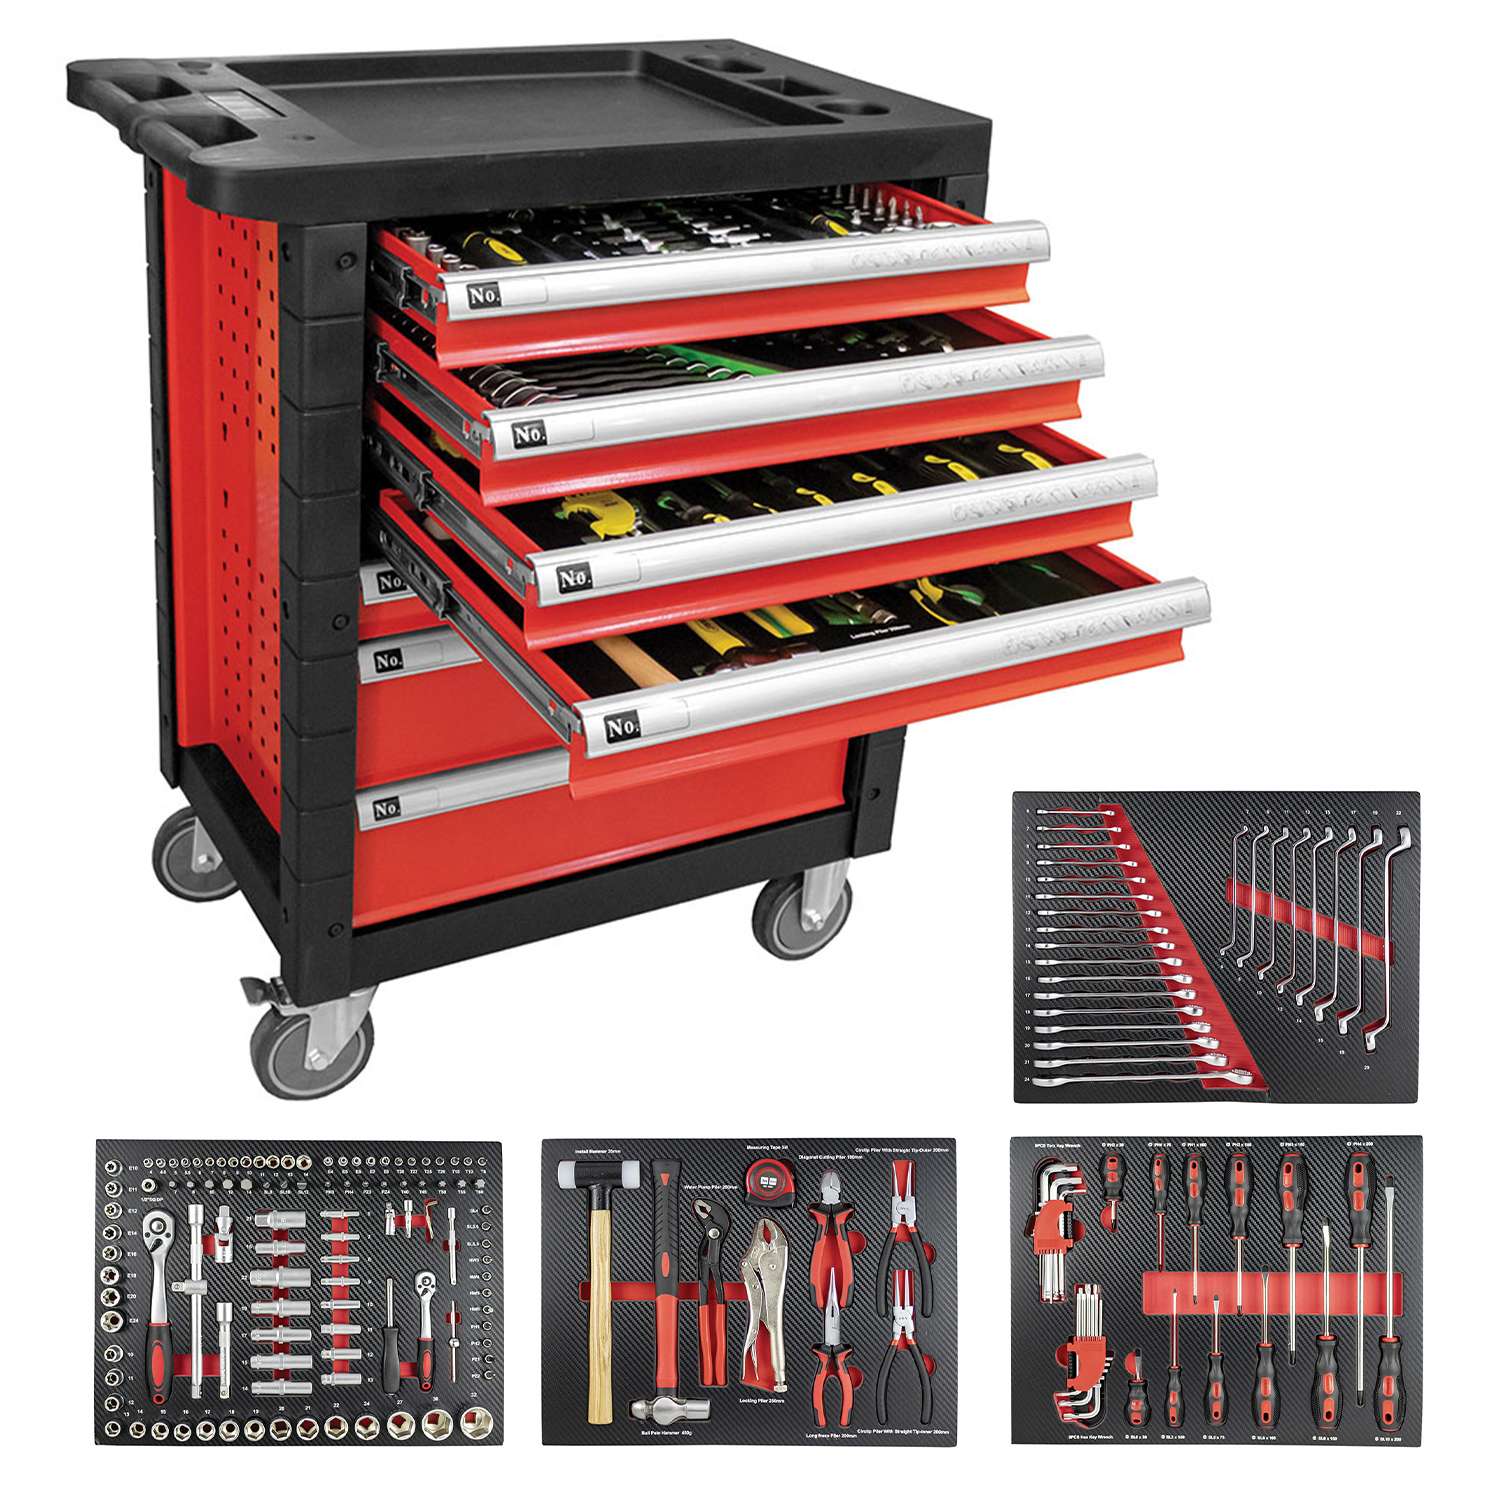 Carrello porta utensili rosso con 7 cassetti completo di 172 utensili - Fermec FM53686